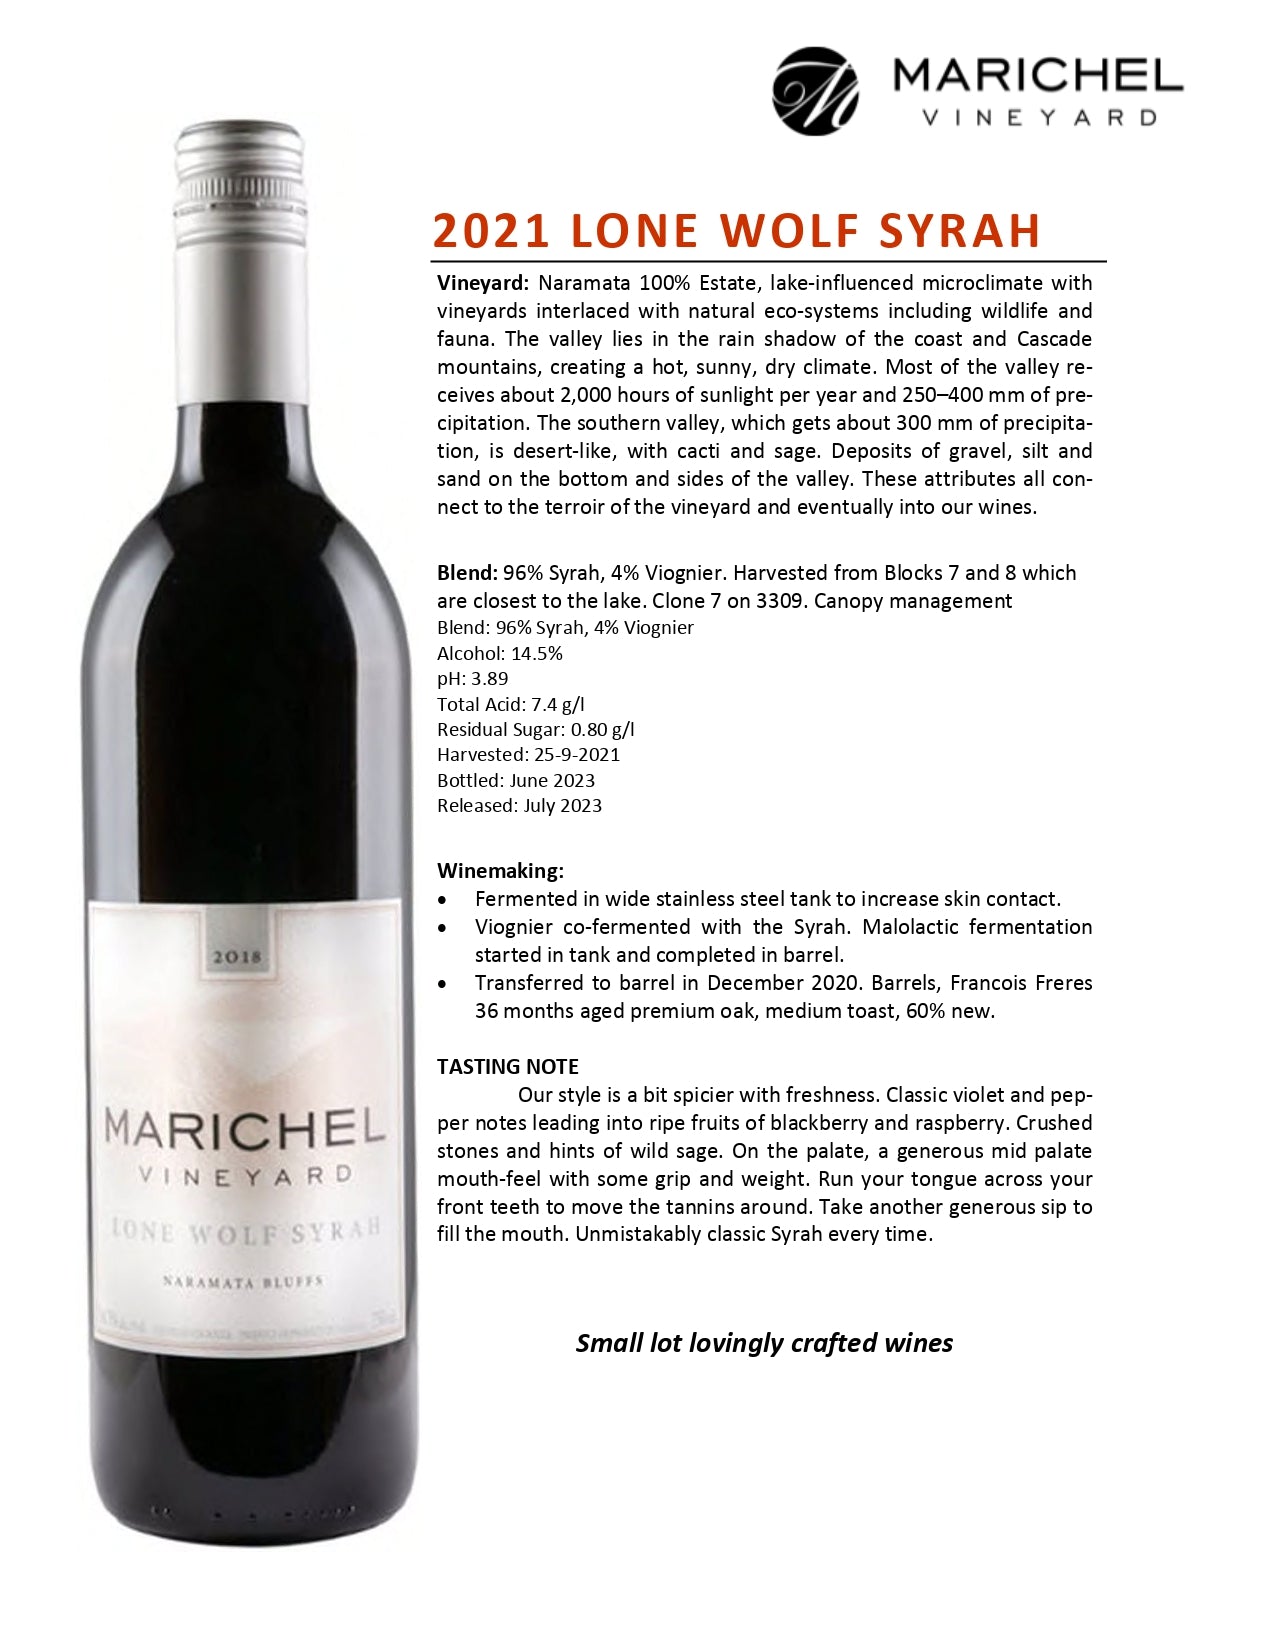 2021 Marichel Lone Wolf Syrah